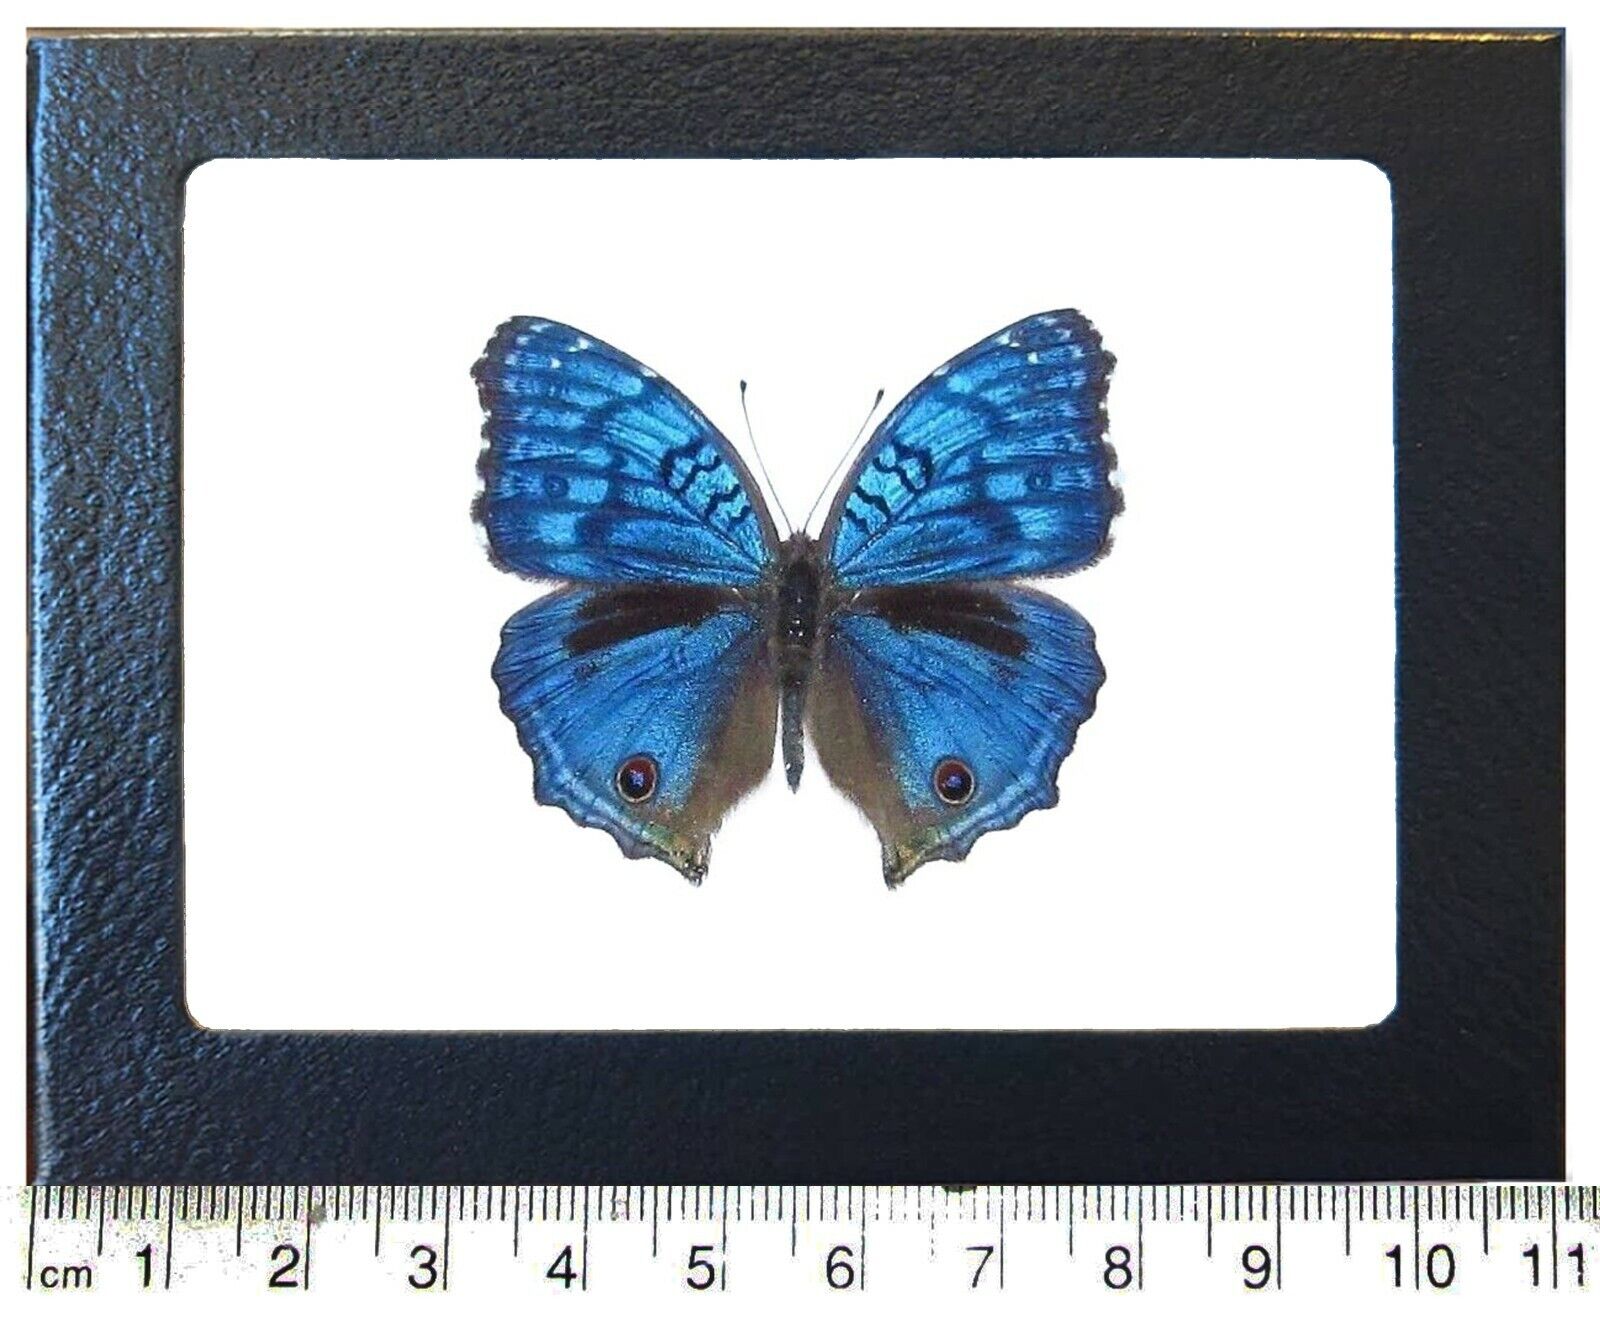 Precis rhadama blue buckeye male butterfly Africa framed